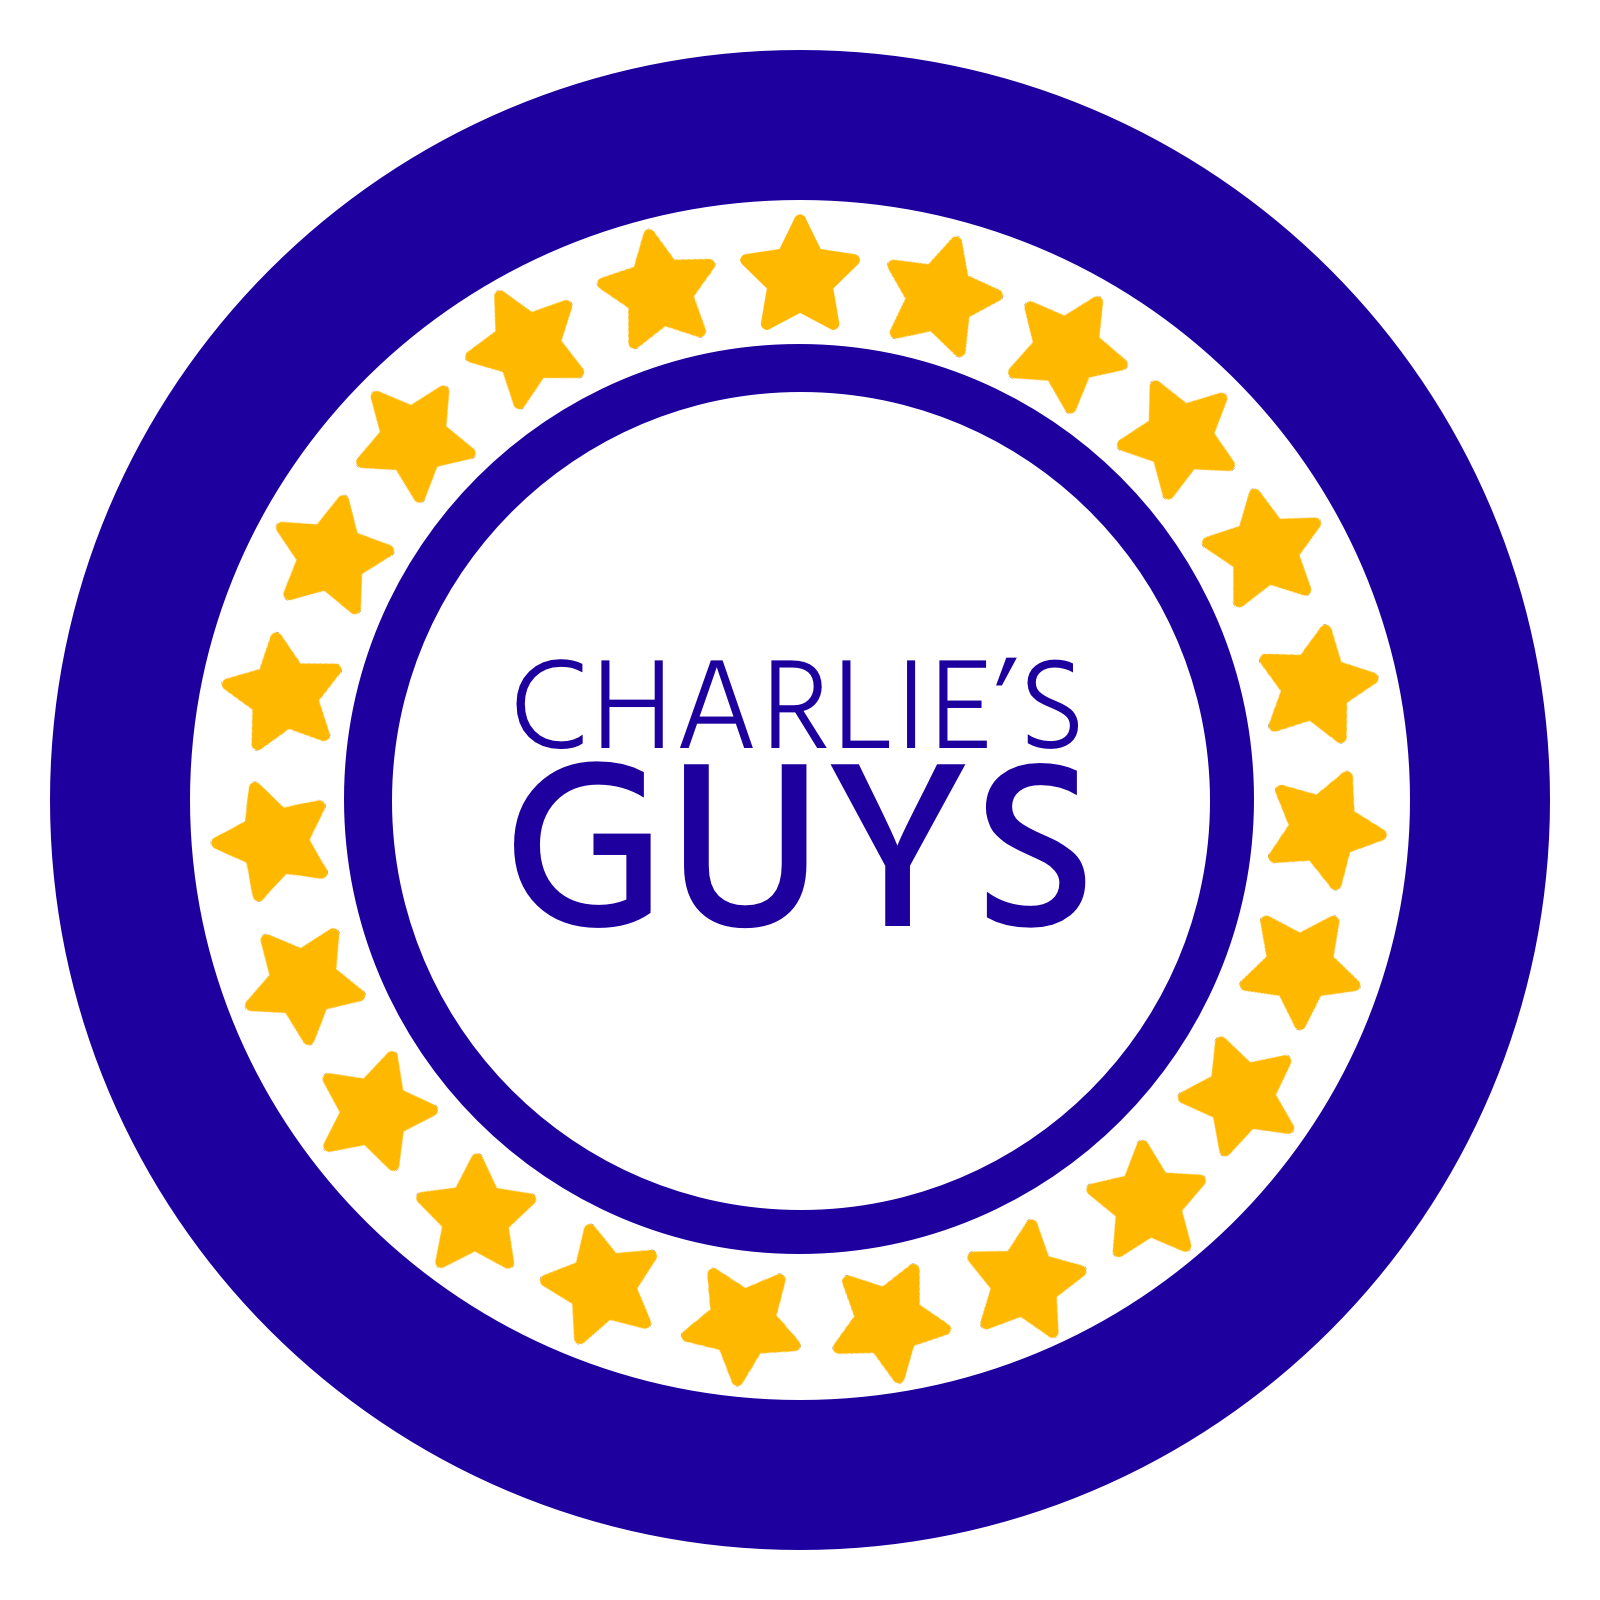 Charlie's Guys logo